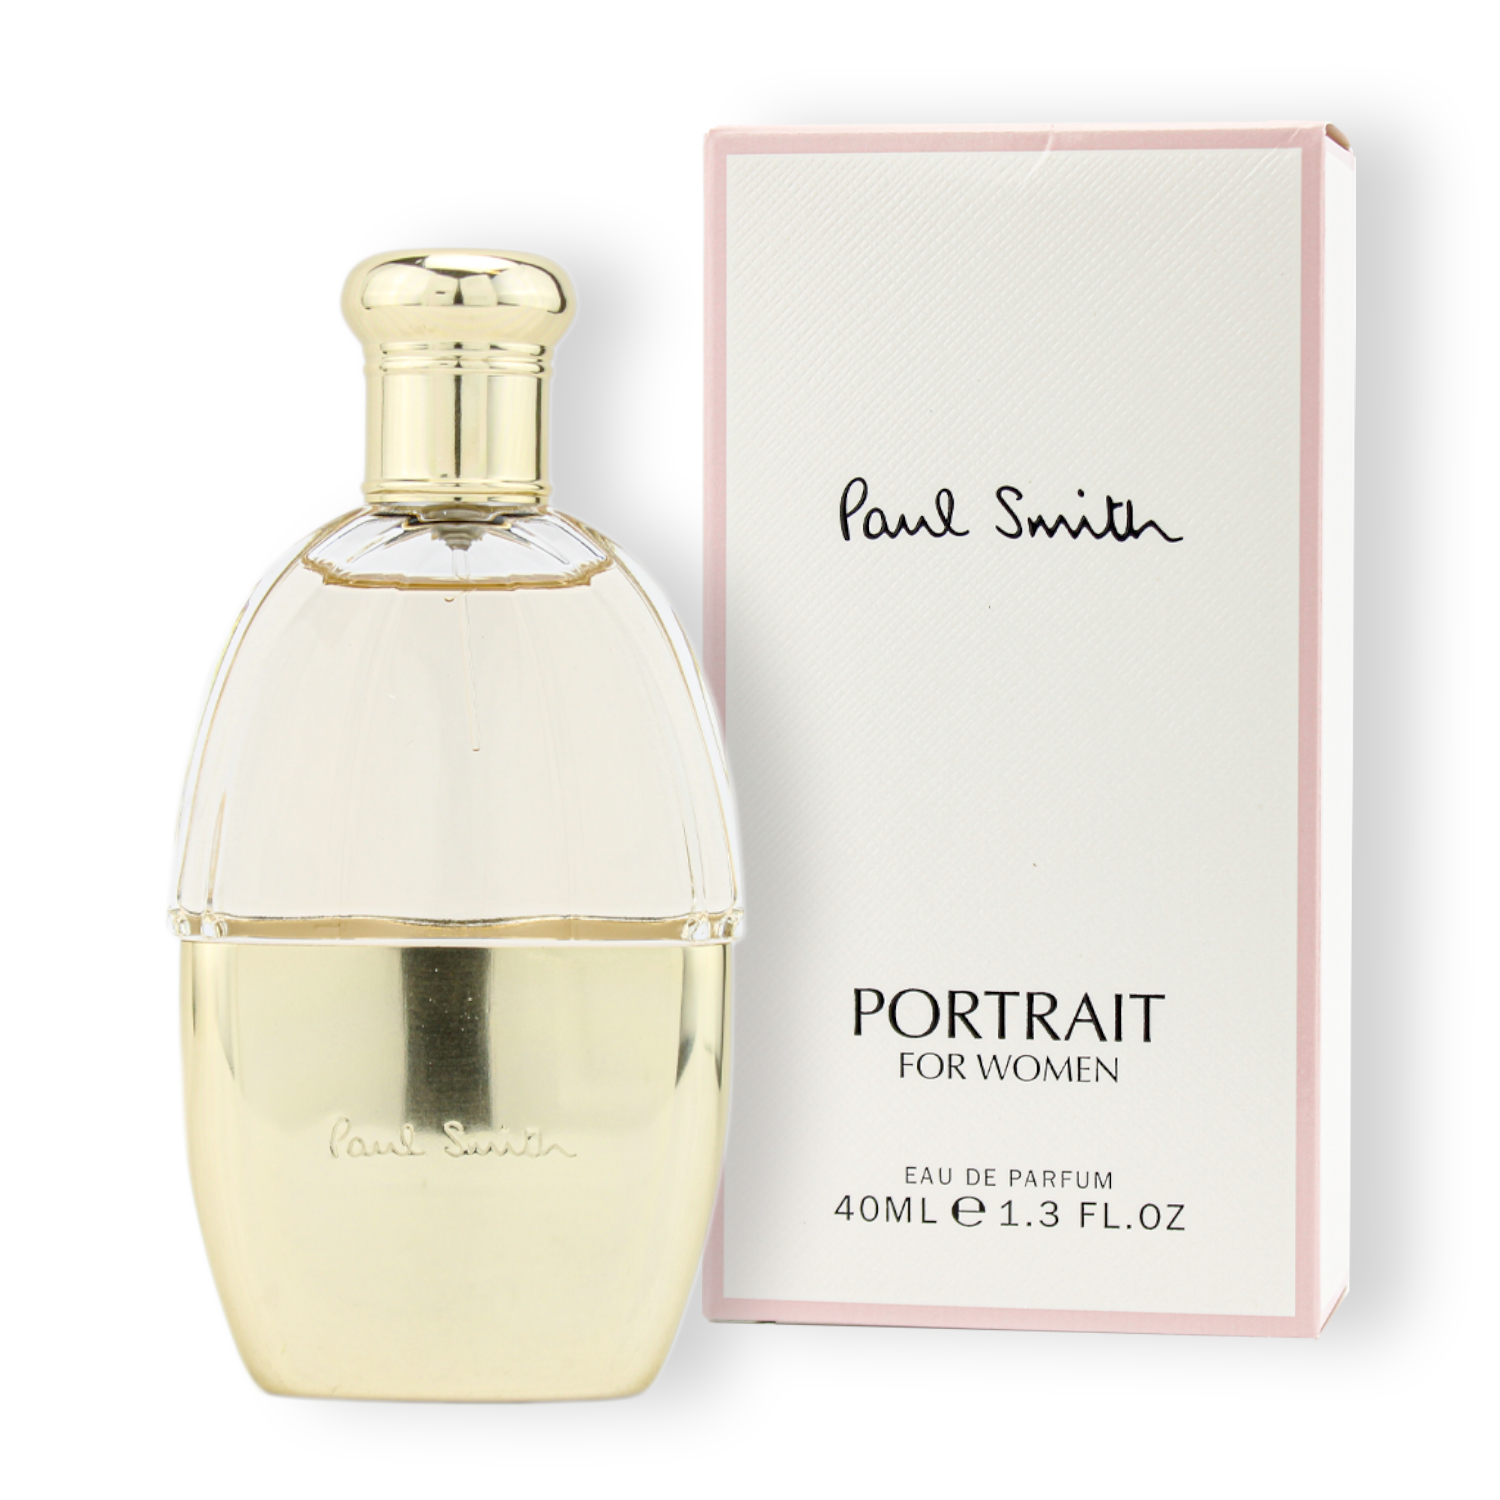 Paul Smith Portrait for Women Eau de Parfum 40ml